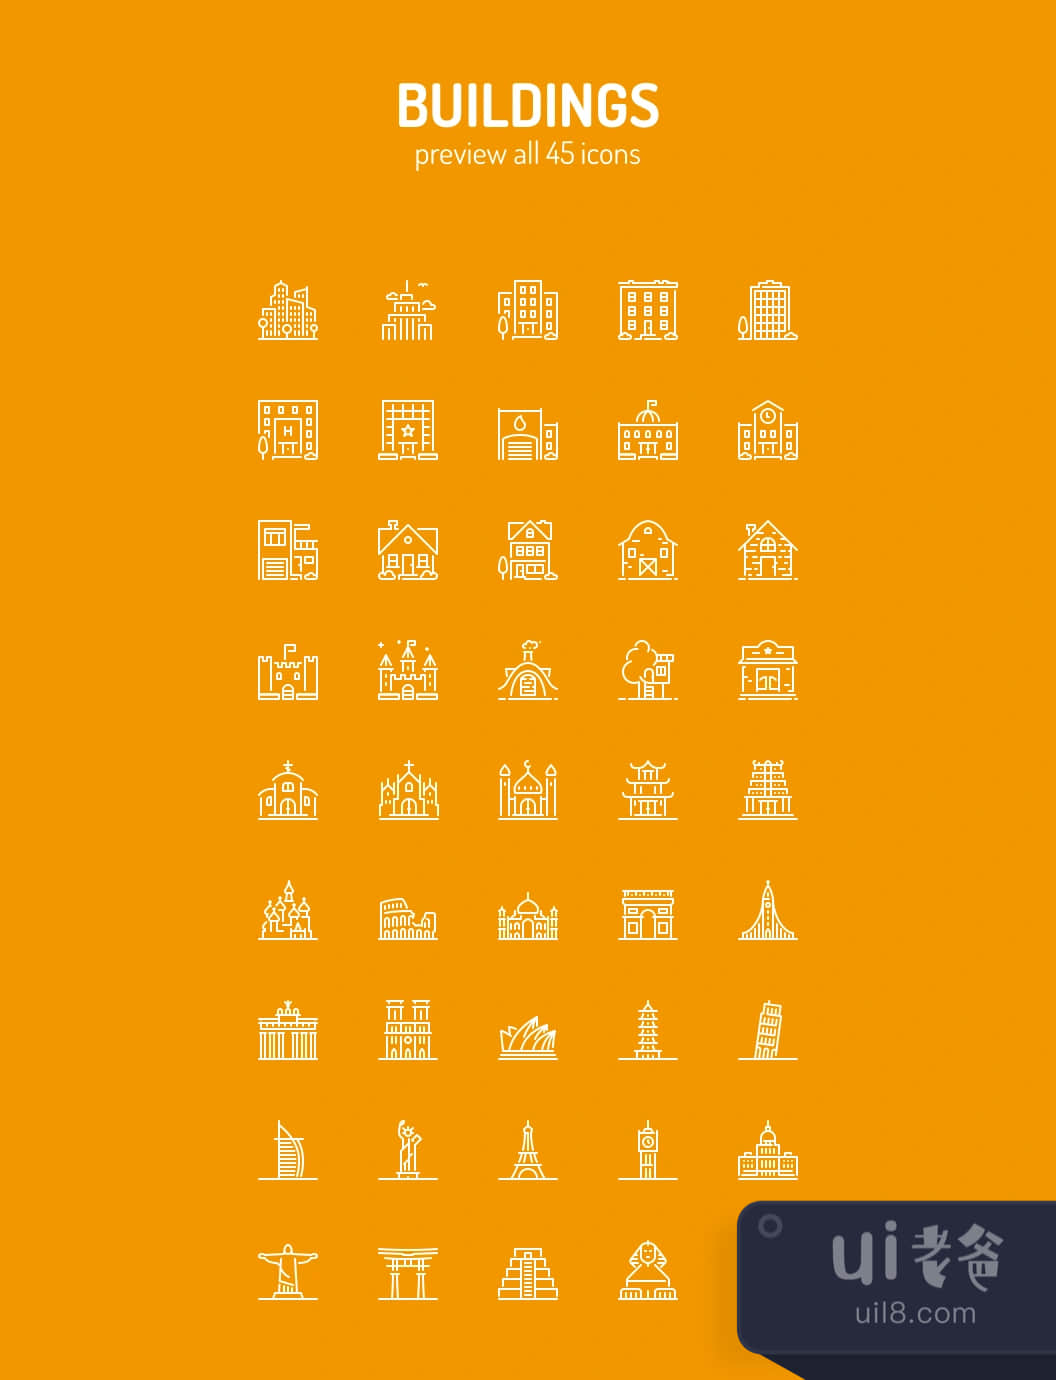 建筑物线条图标 (Buildings Line Icons)插图